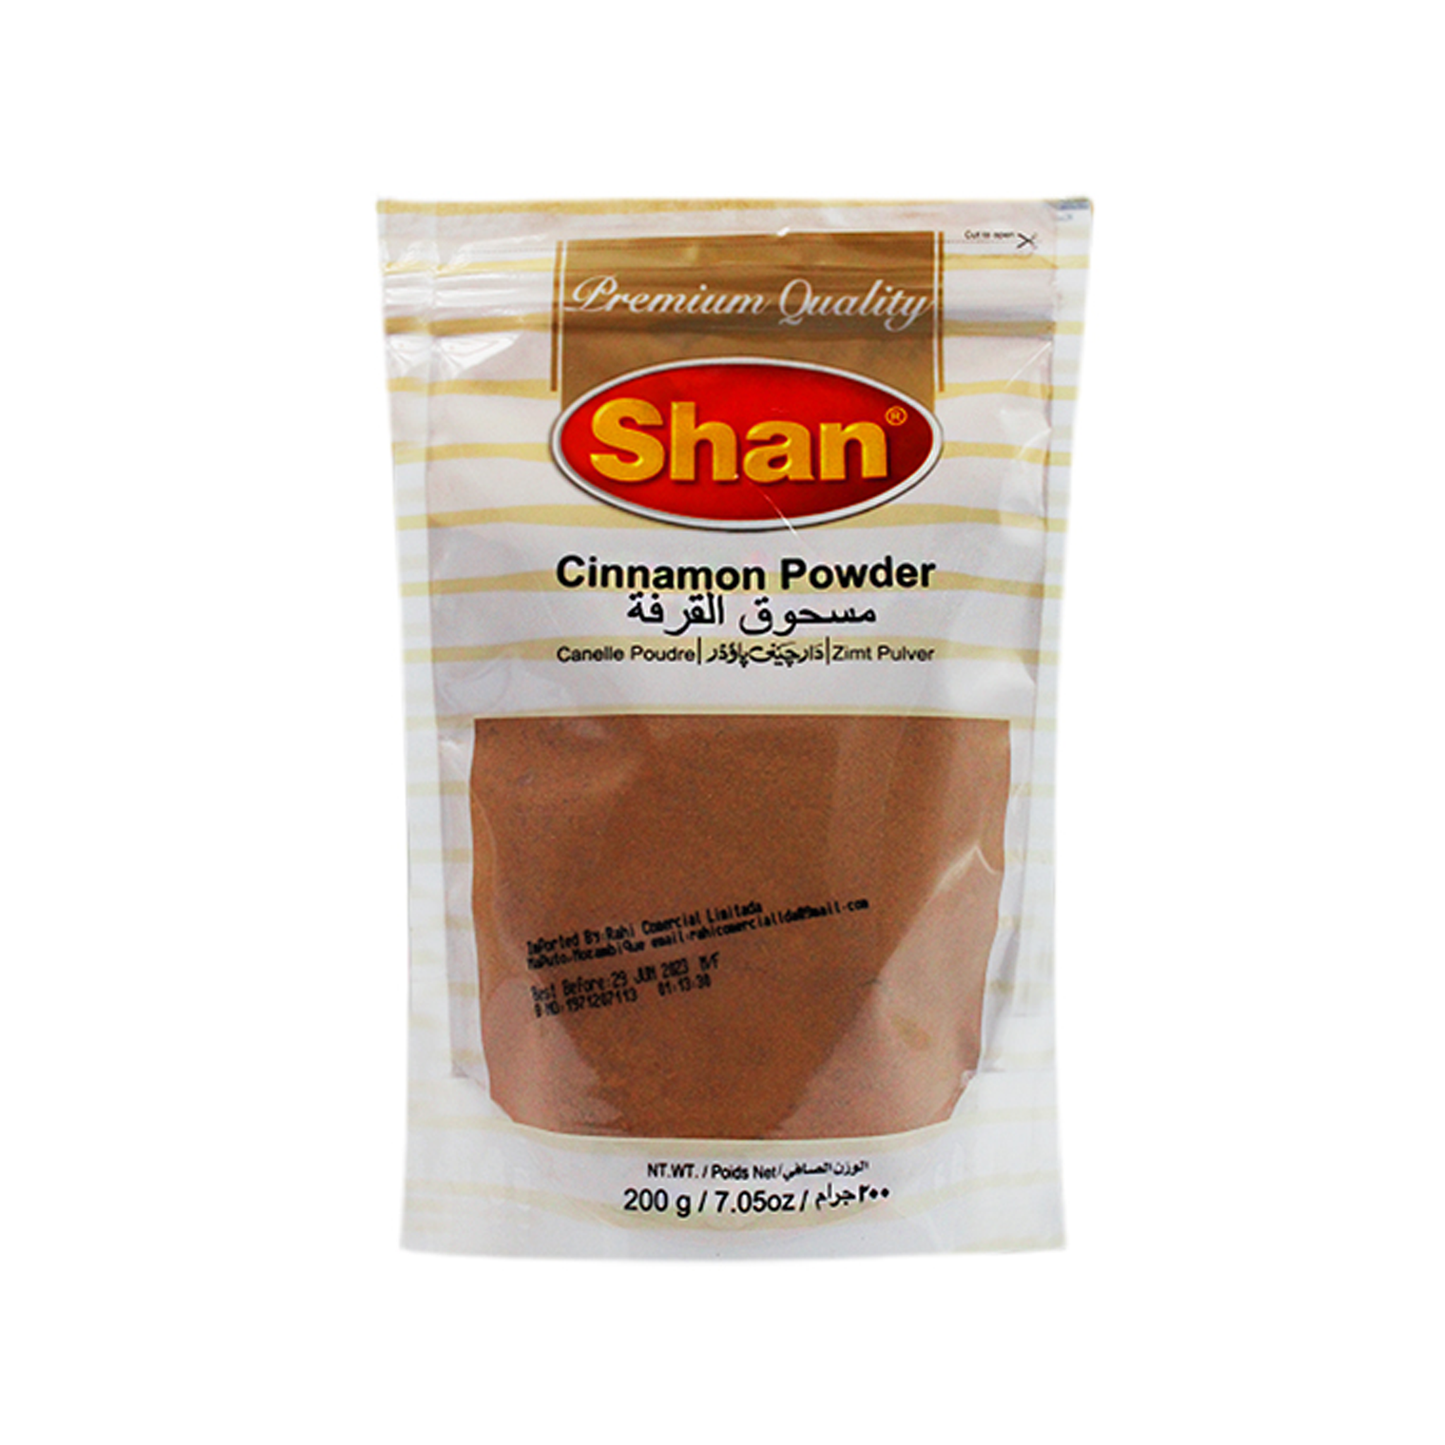 SHAN (St/up) Cinnamon Powder 200gm Bx_18 VishalBazar